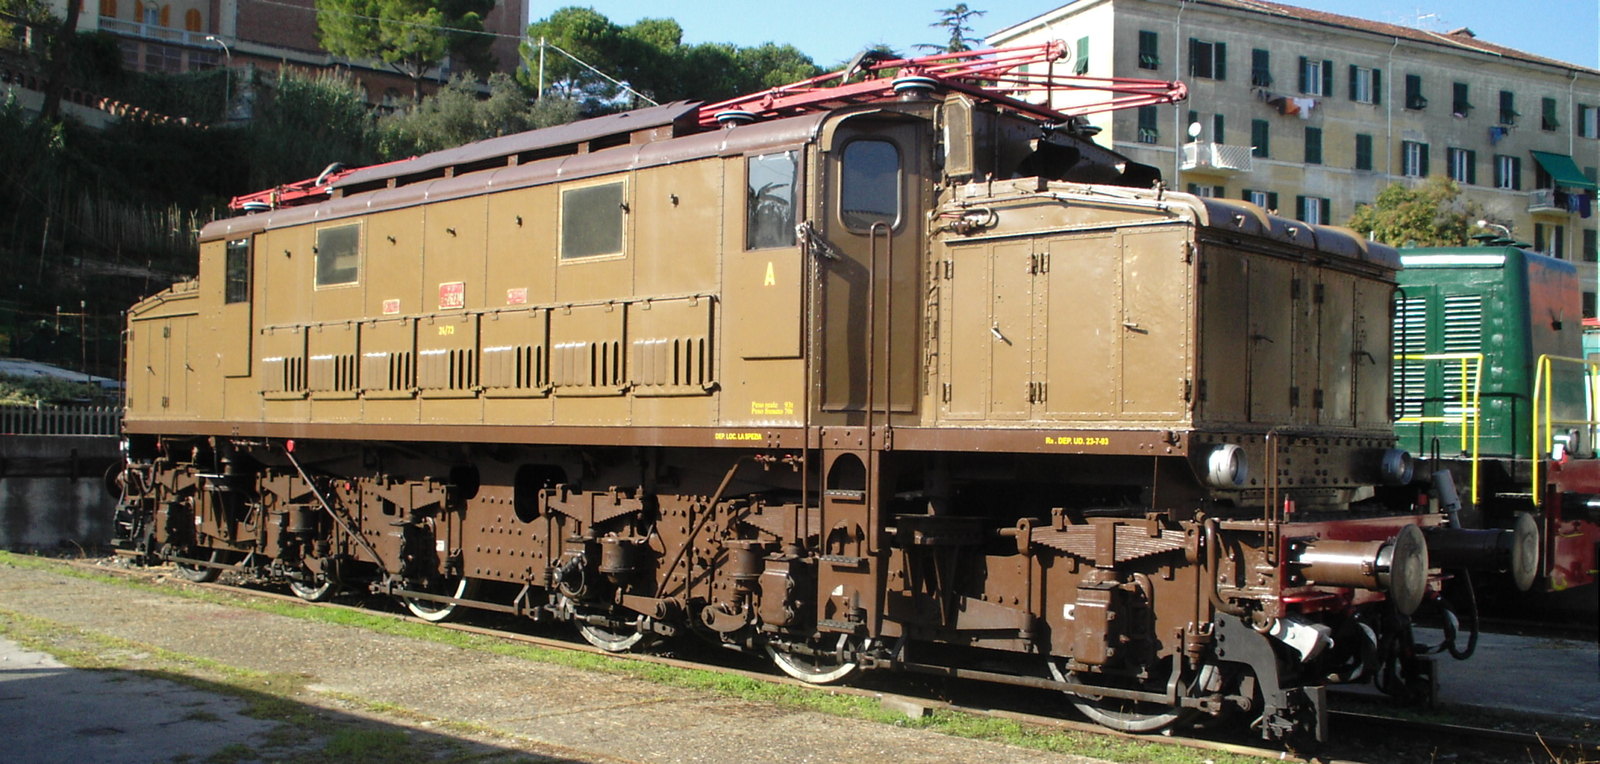 E.626.294 on display at La Spezia